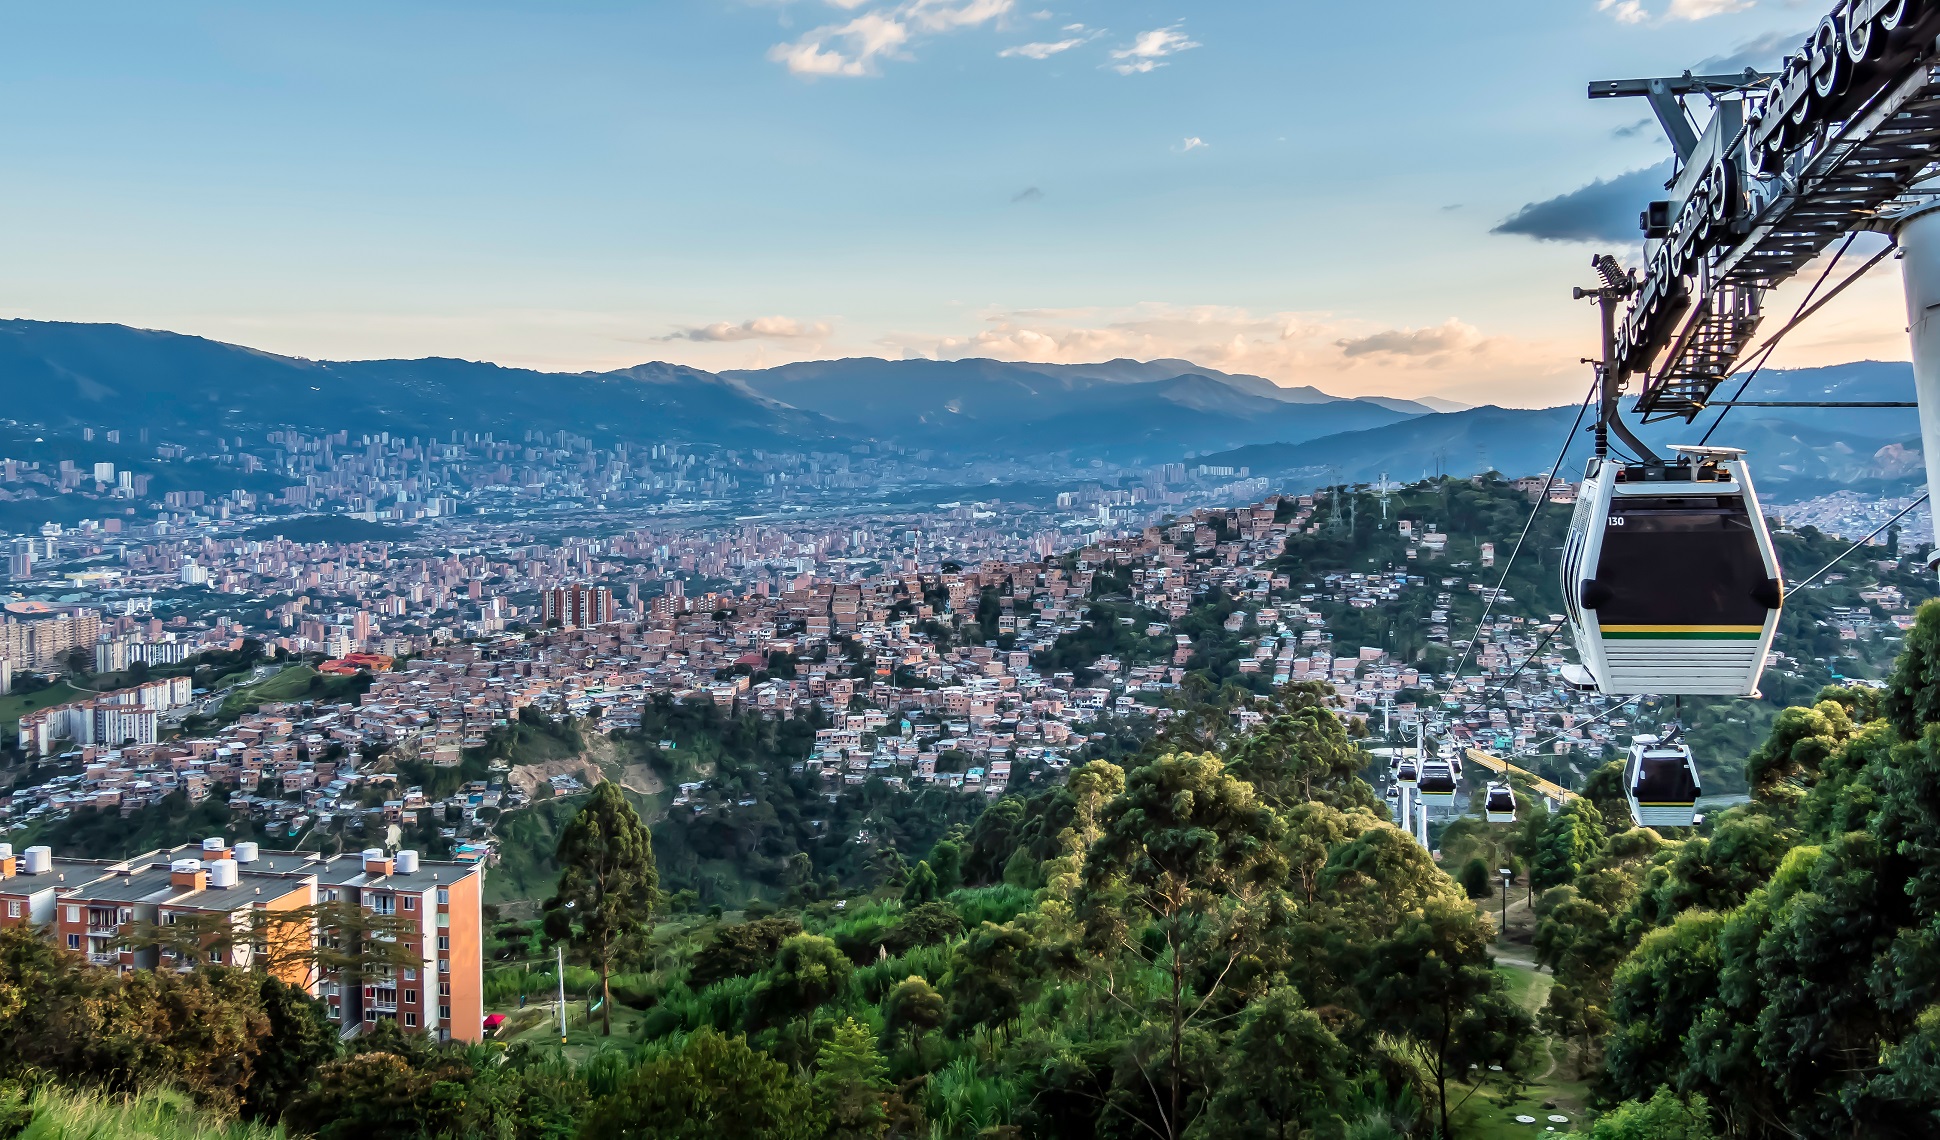 Cabinovia su Medellin | Shutterstock | Viaggigiovani.it